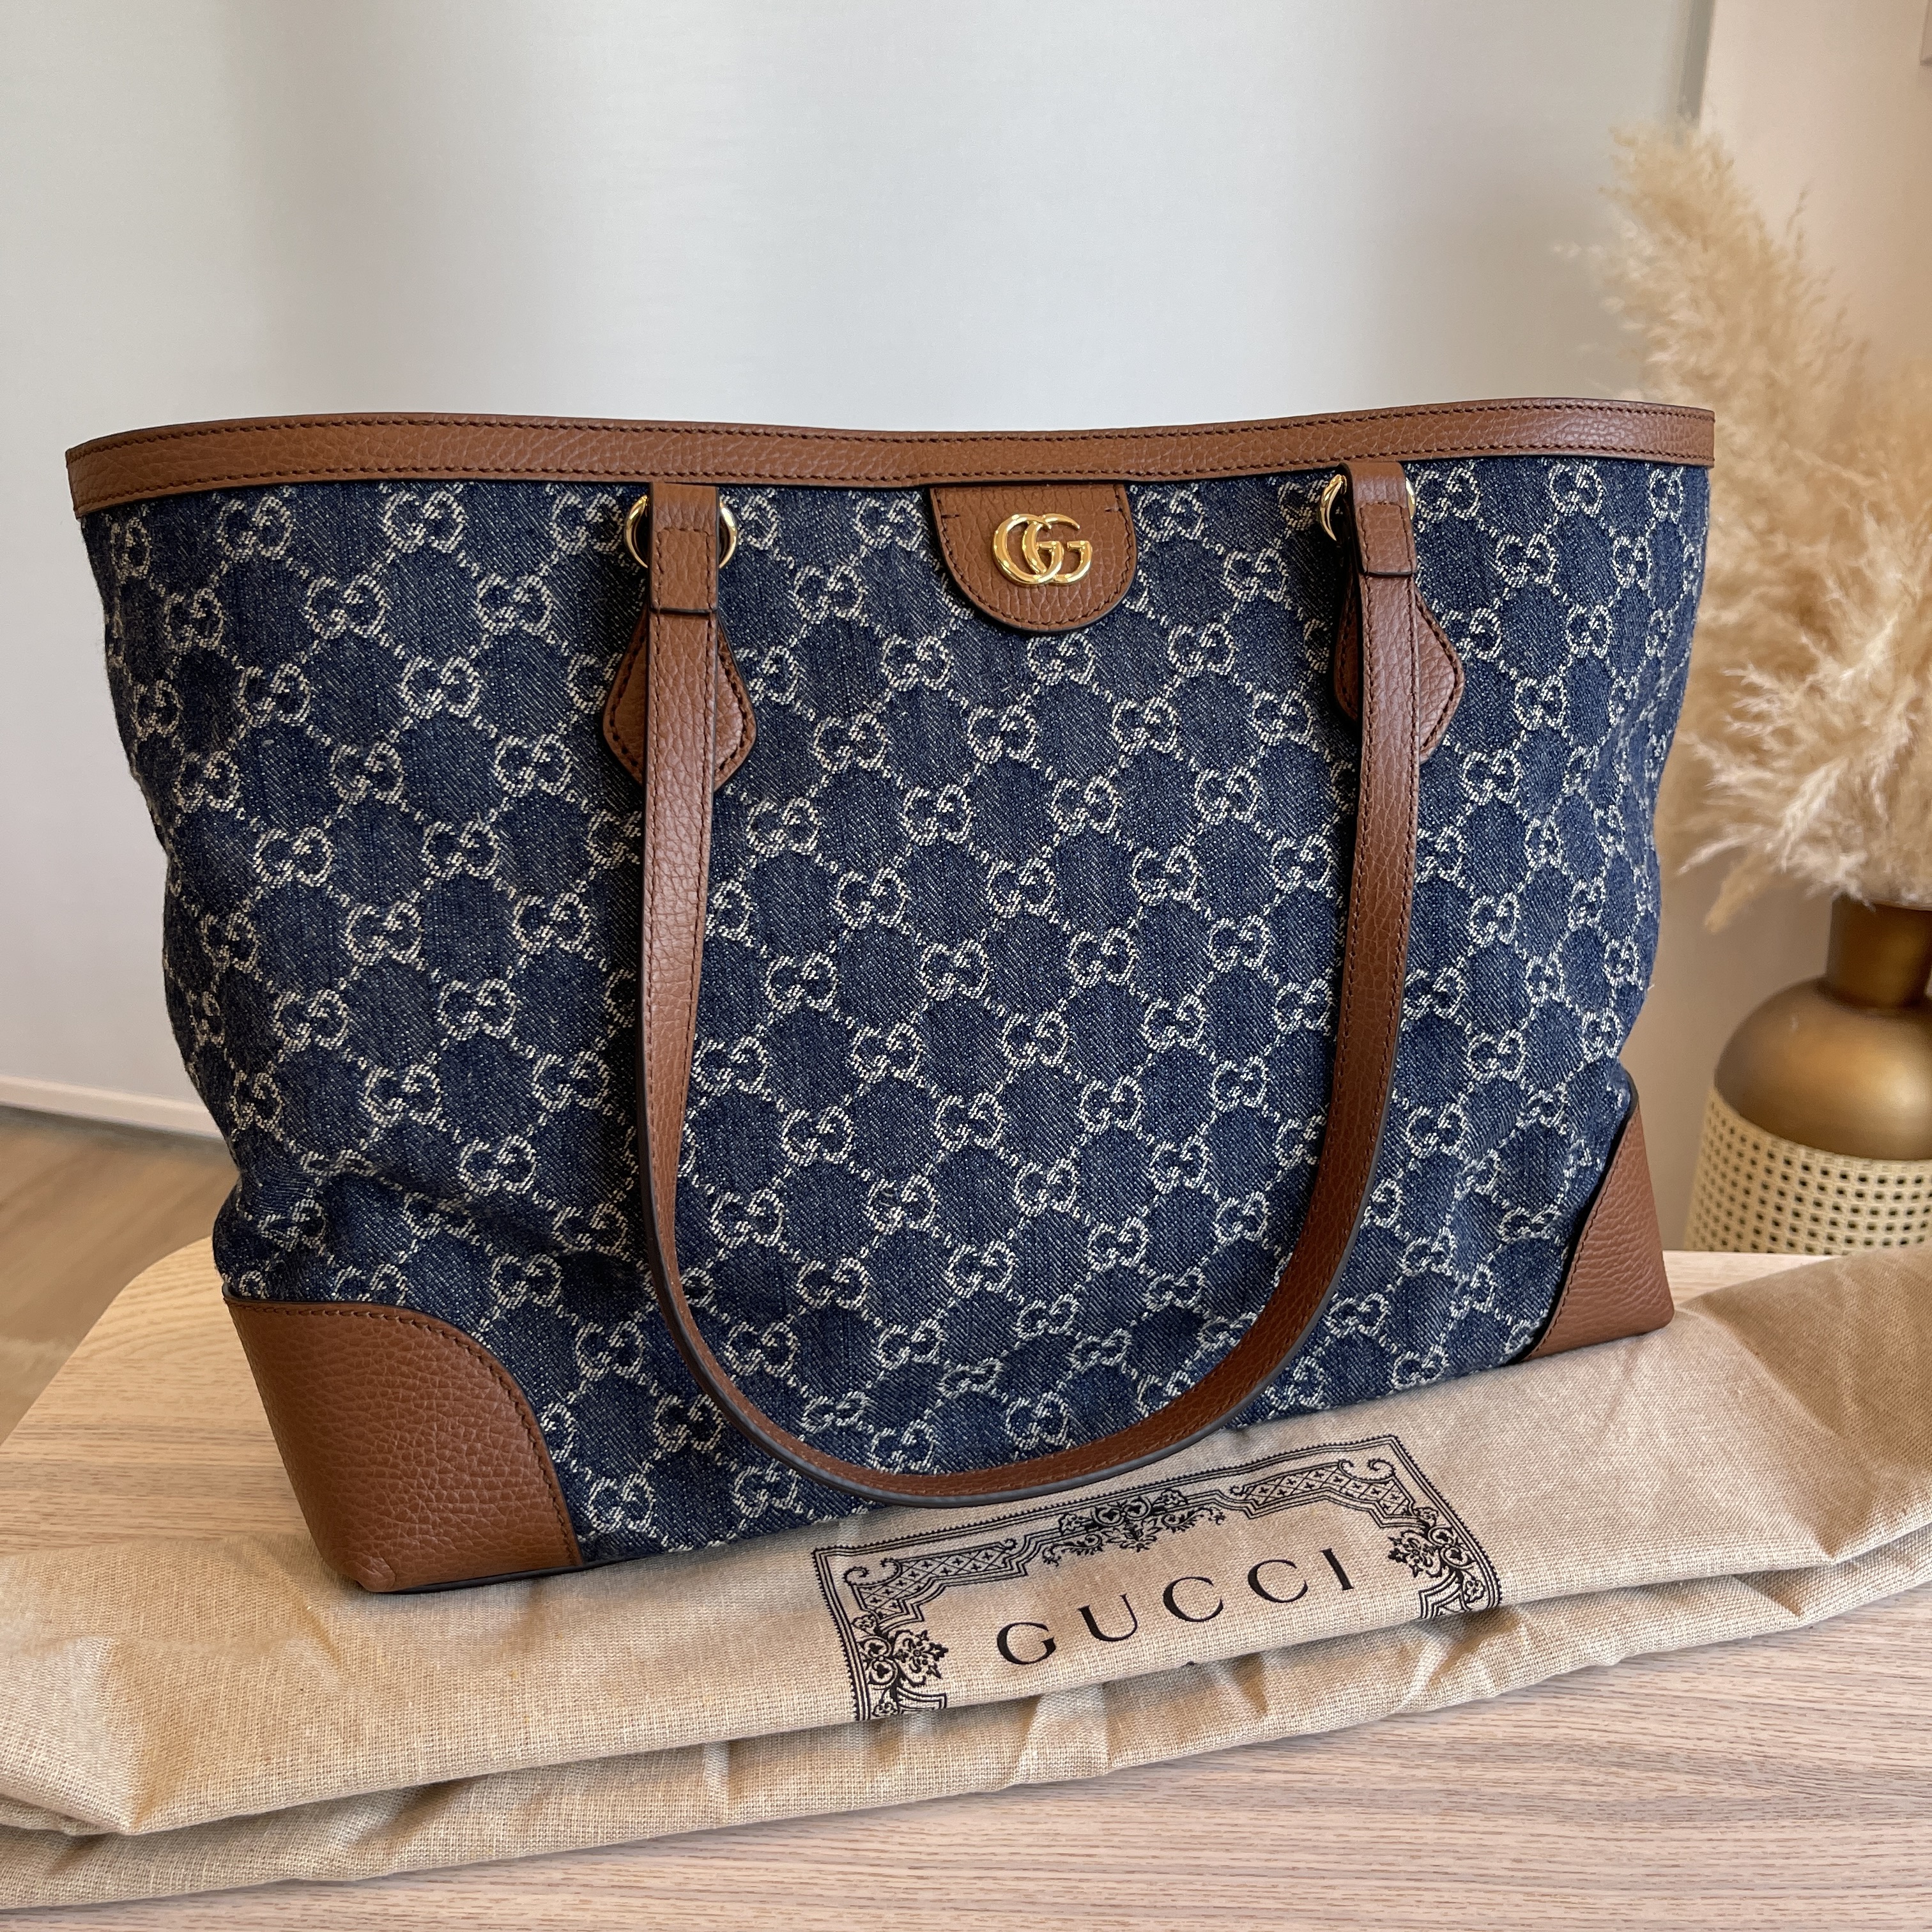 Sewing a Gucci Dust bag into a Handbag 